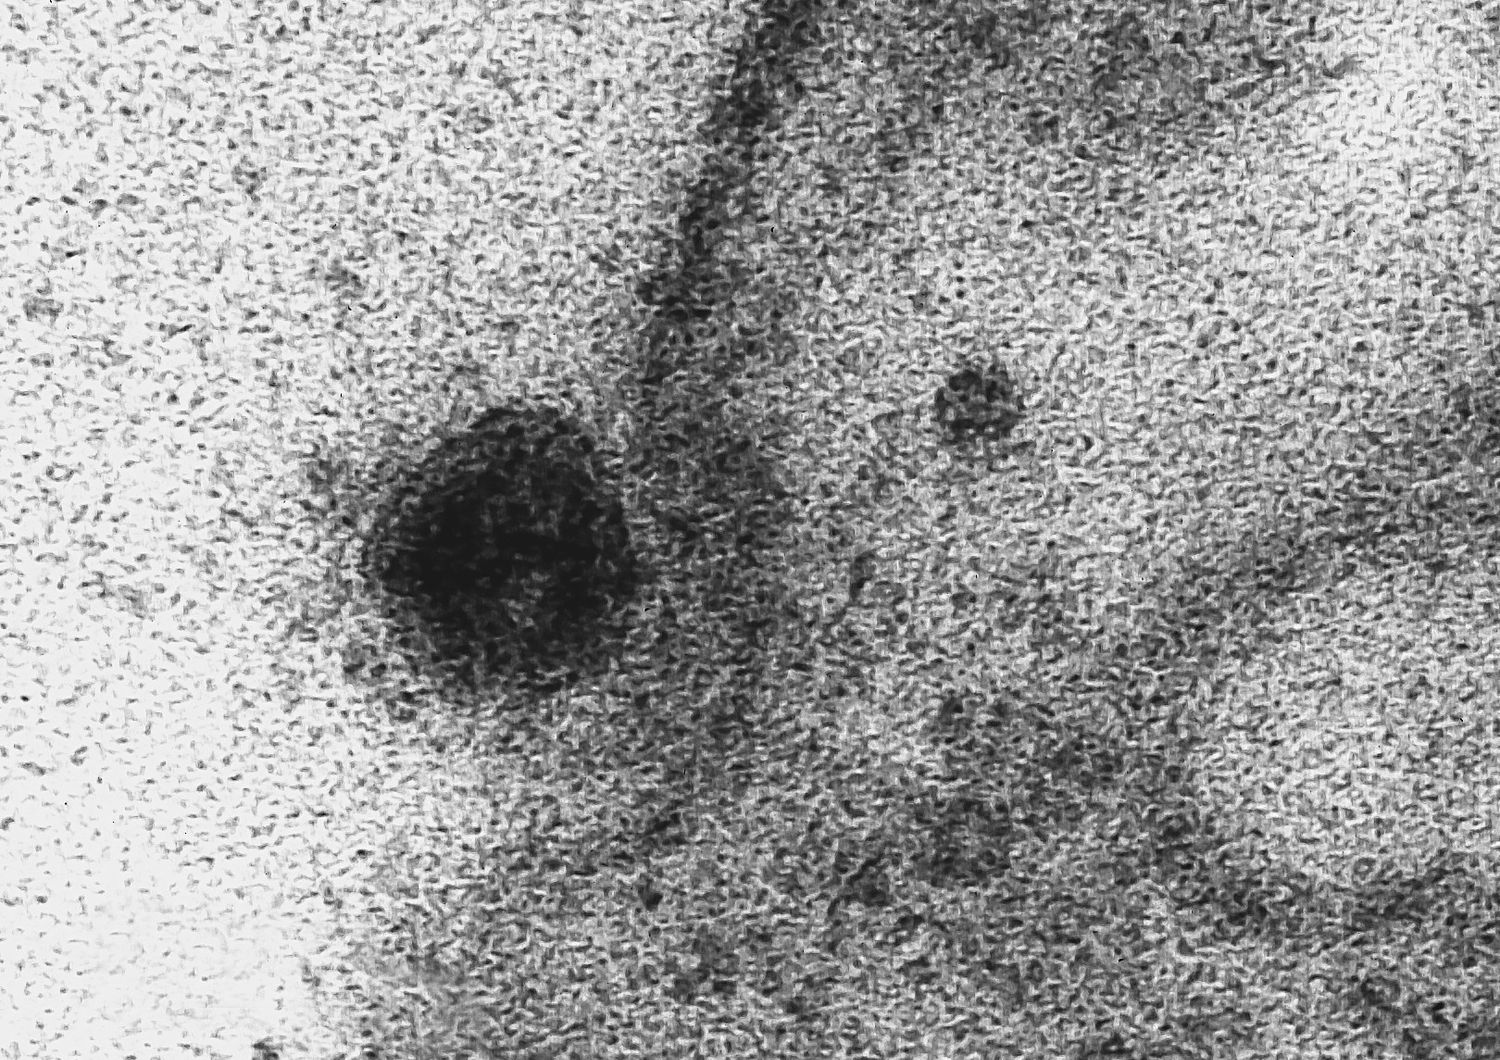 Un immagine del coronavirus Covid-19 che infetta una cellula